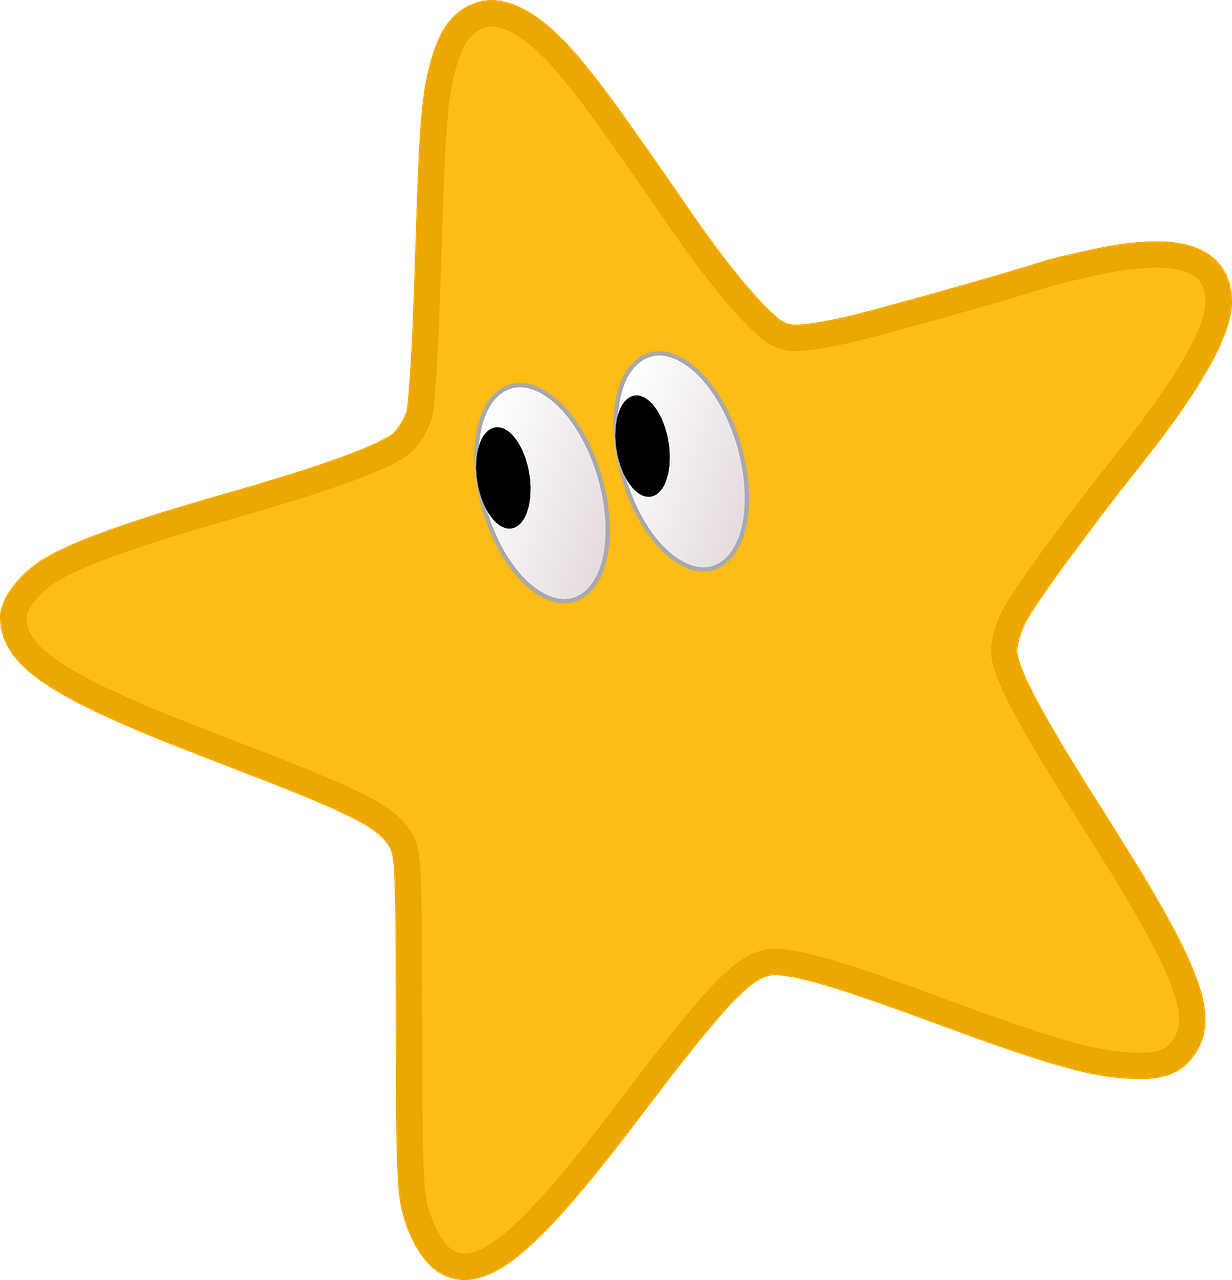 Yellow Star Clipart - Desenho De Estrela Amarela - Png Download (693x720), Png Download